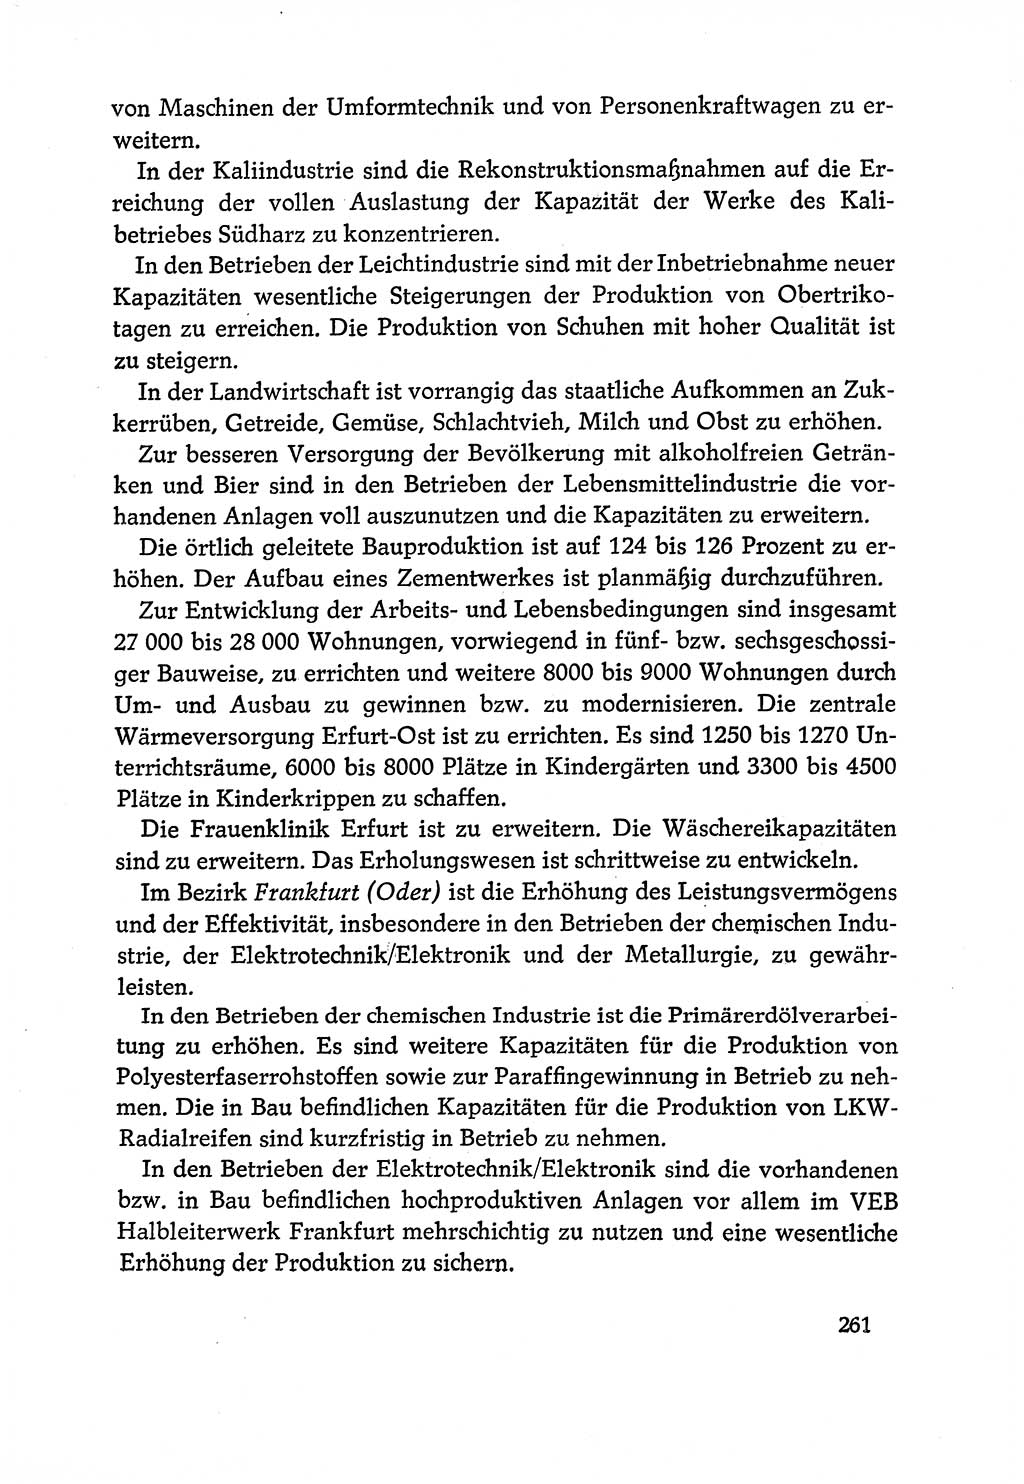 Dokumente der Sozialistischen Einheitspartei Deutschlands (SED) [Deutsche Demokratische Republik (DDR)] 1970-1971, Seite 261 (Dok. SED DDR 1970-1971, S. 261)